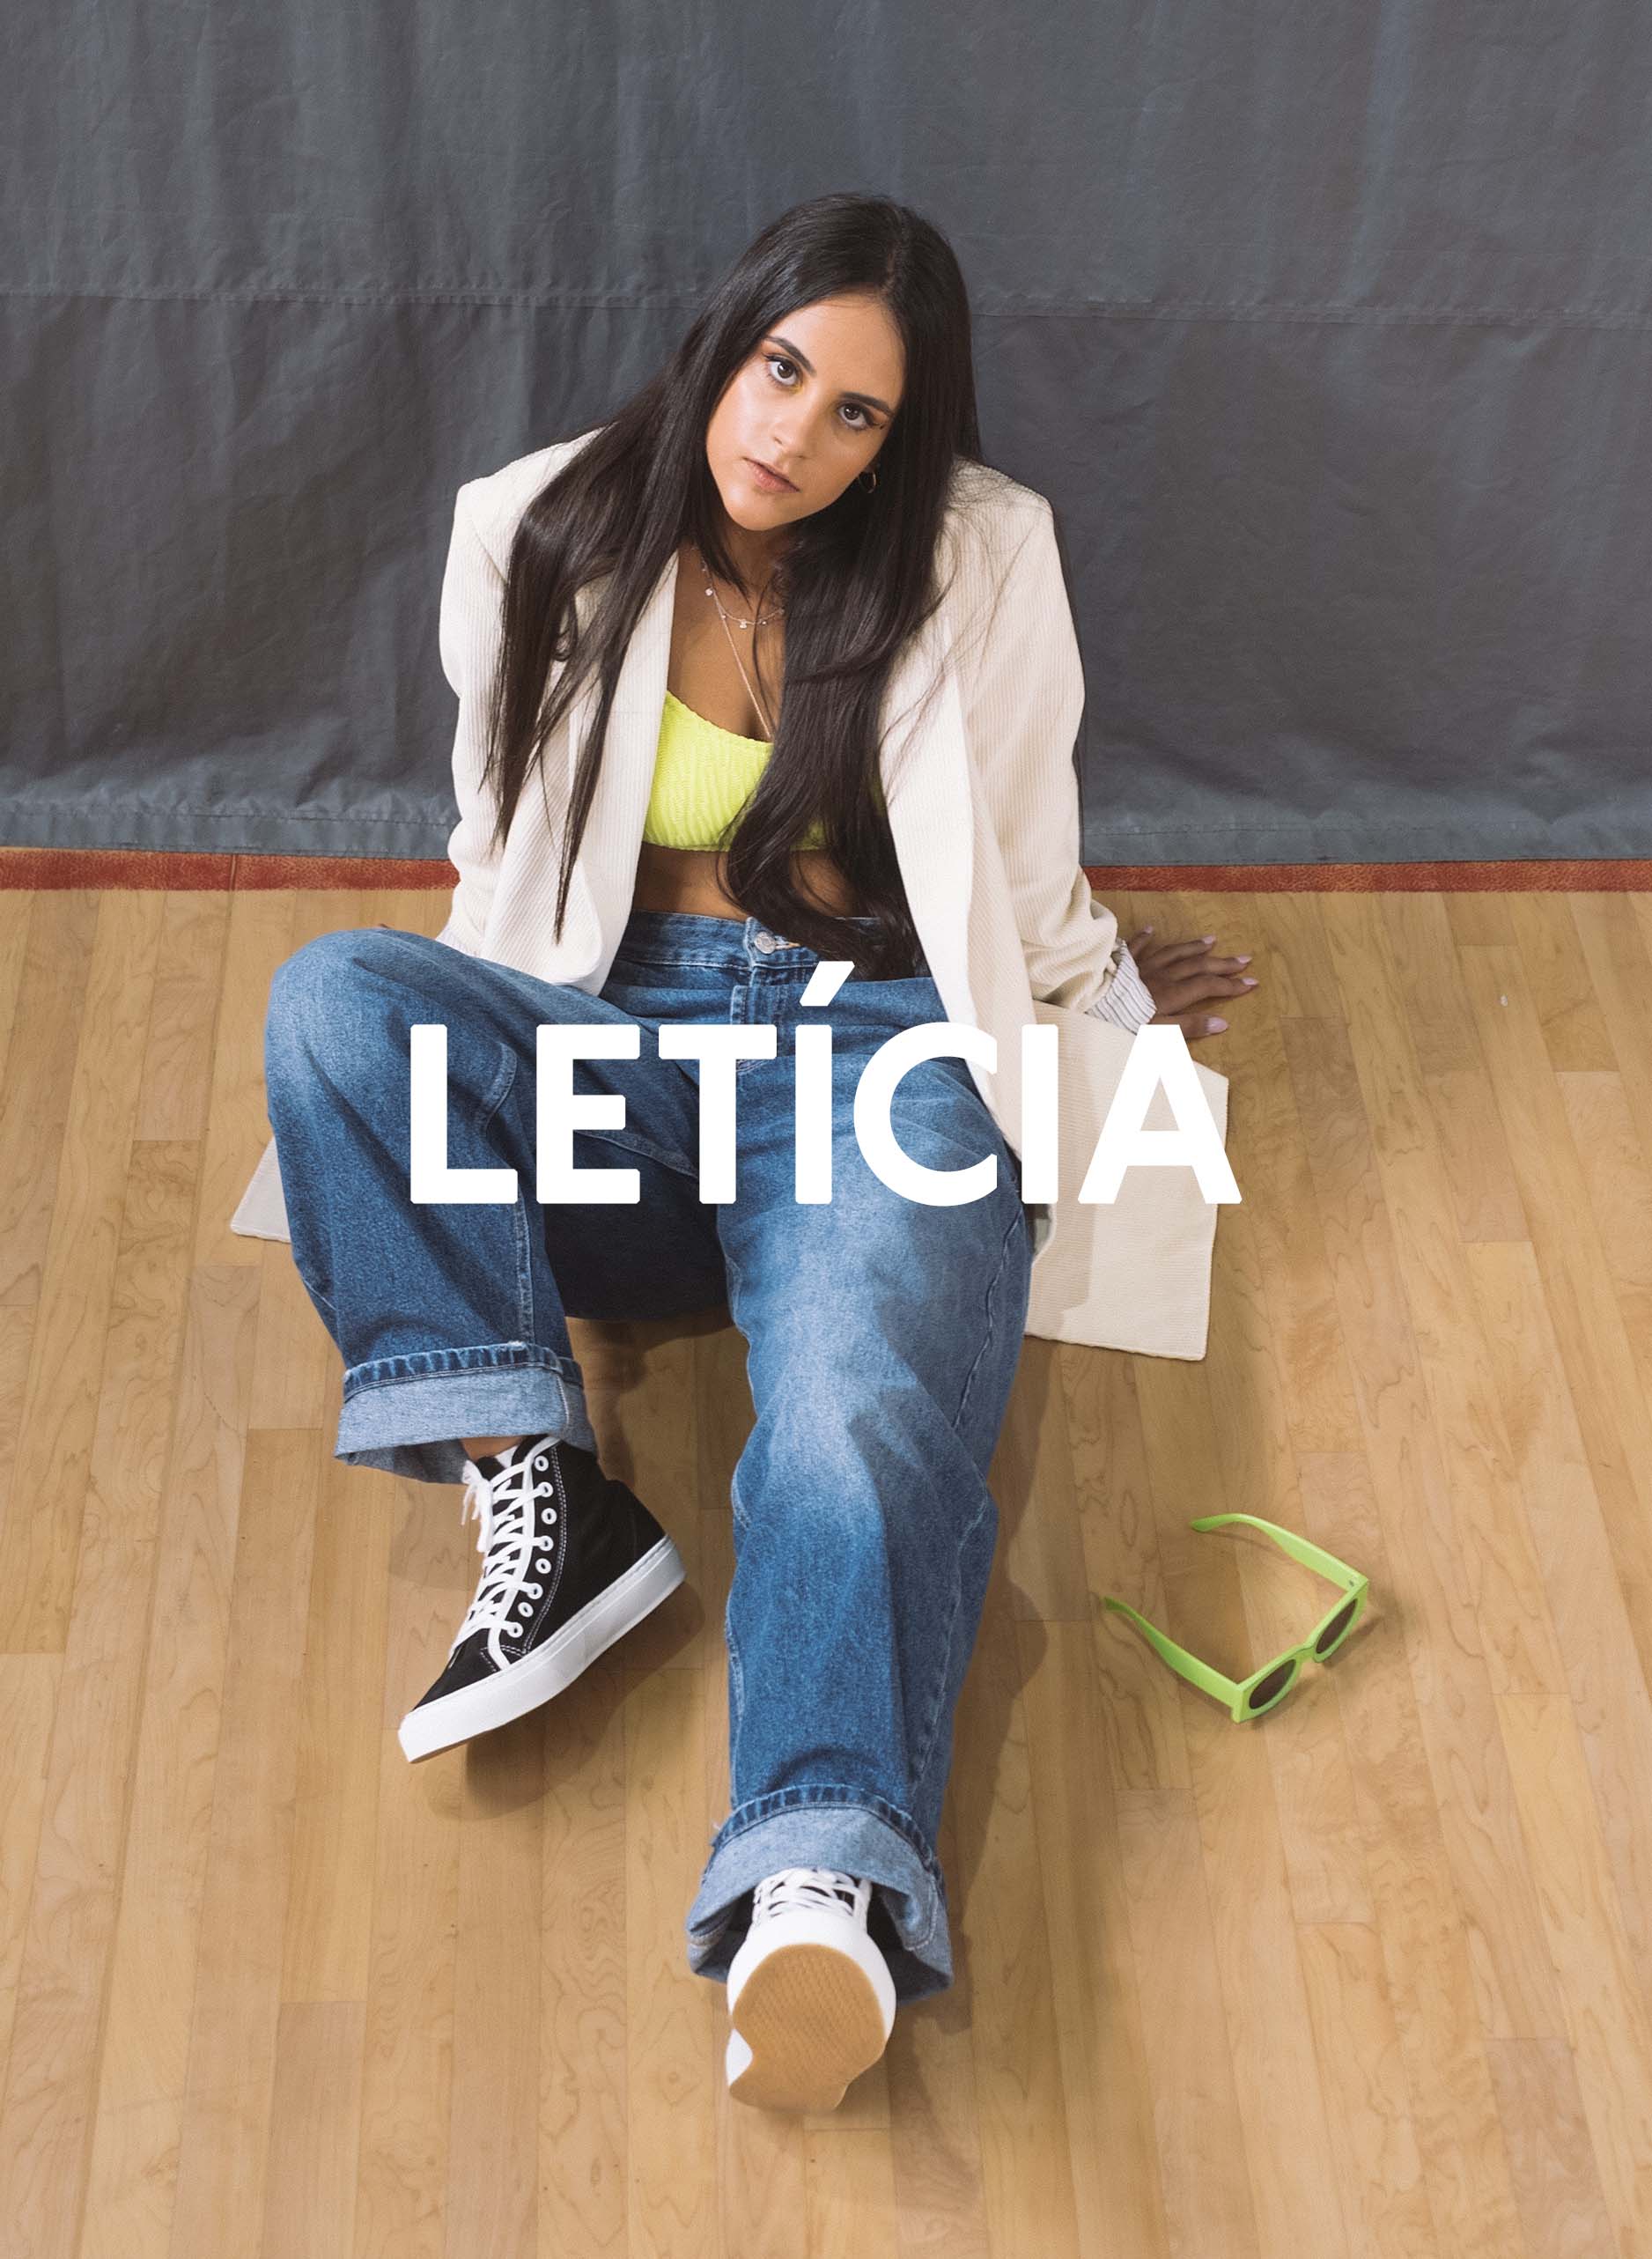 Leticia seduta sul pavimento di una palestra che guarda dritto verso la telecamera, indossando Diverge sneakers, promuovendo l'impatto sociale e le scarpe personalizzate attraverso il progetto Imagine. 